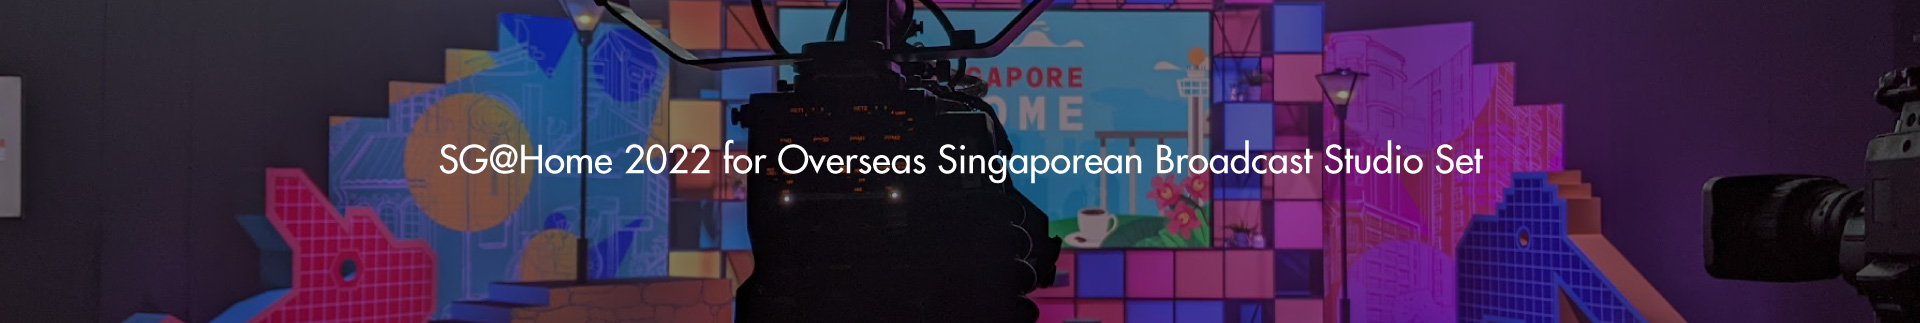 SG@Home 2022 for Overseas Singaporean Broadcast Studio Set